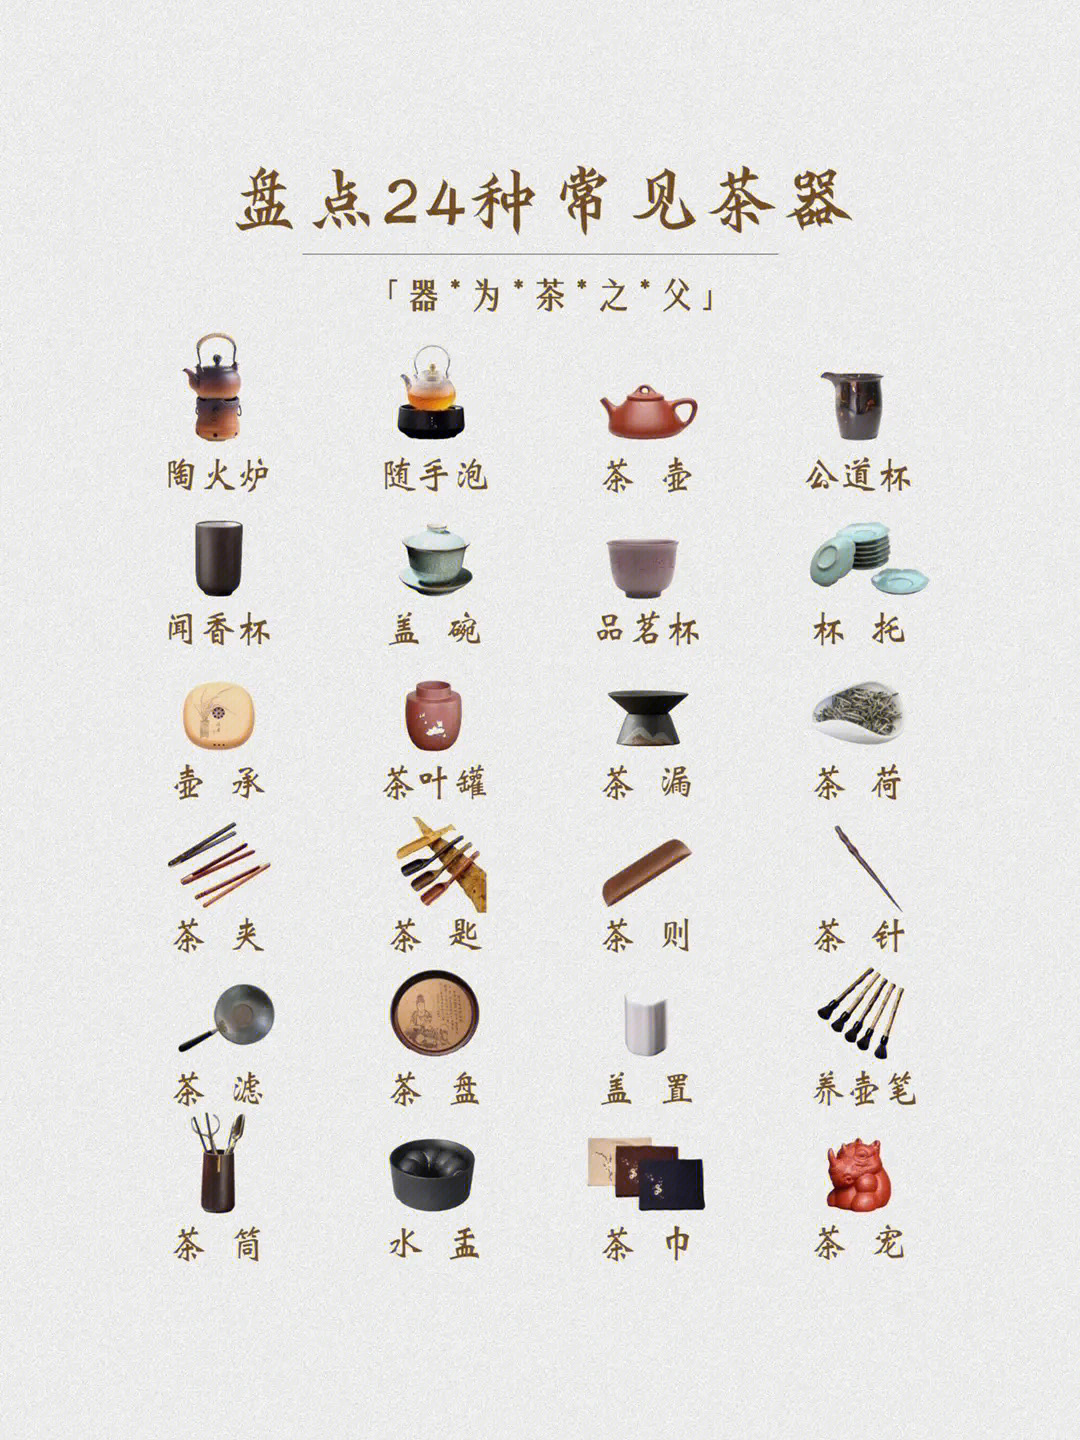 茶具各种器具名称图片